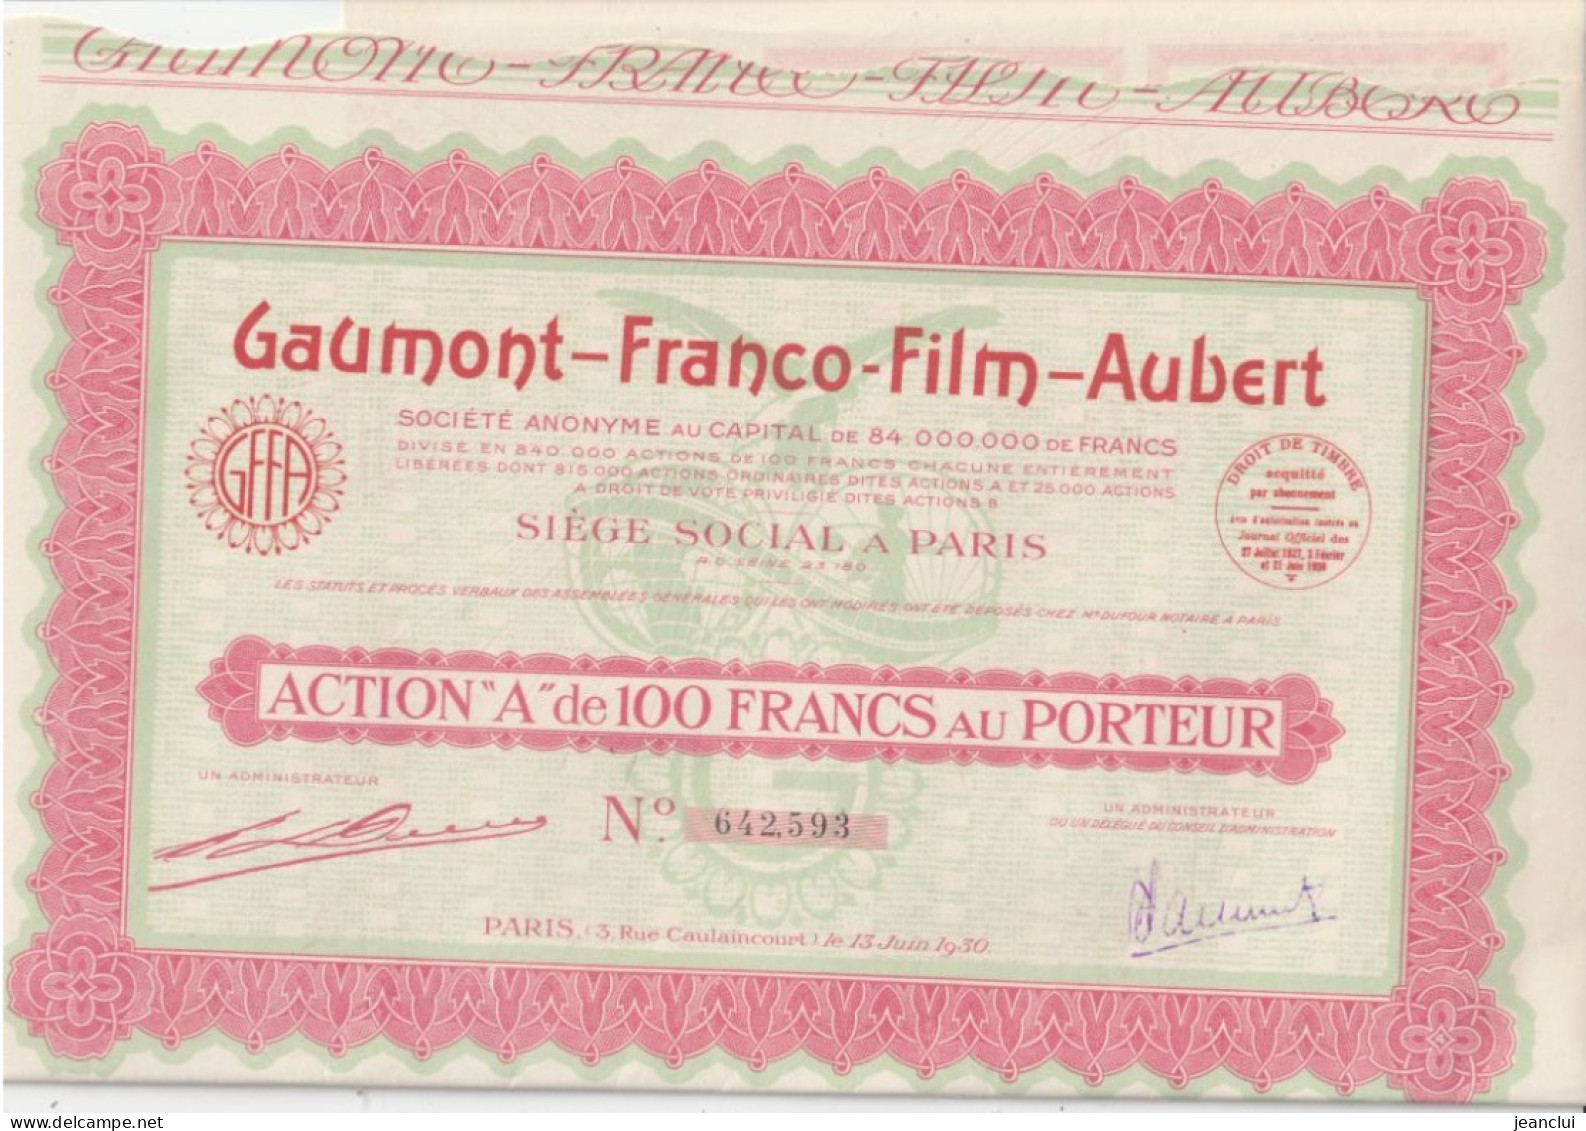 GAUMONT - FRANCO - FILM - AUBERT  . ACTION " A " De 100 FRANCS AU PORTEUR  N° 642.593 - Kino & Theater